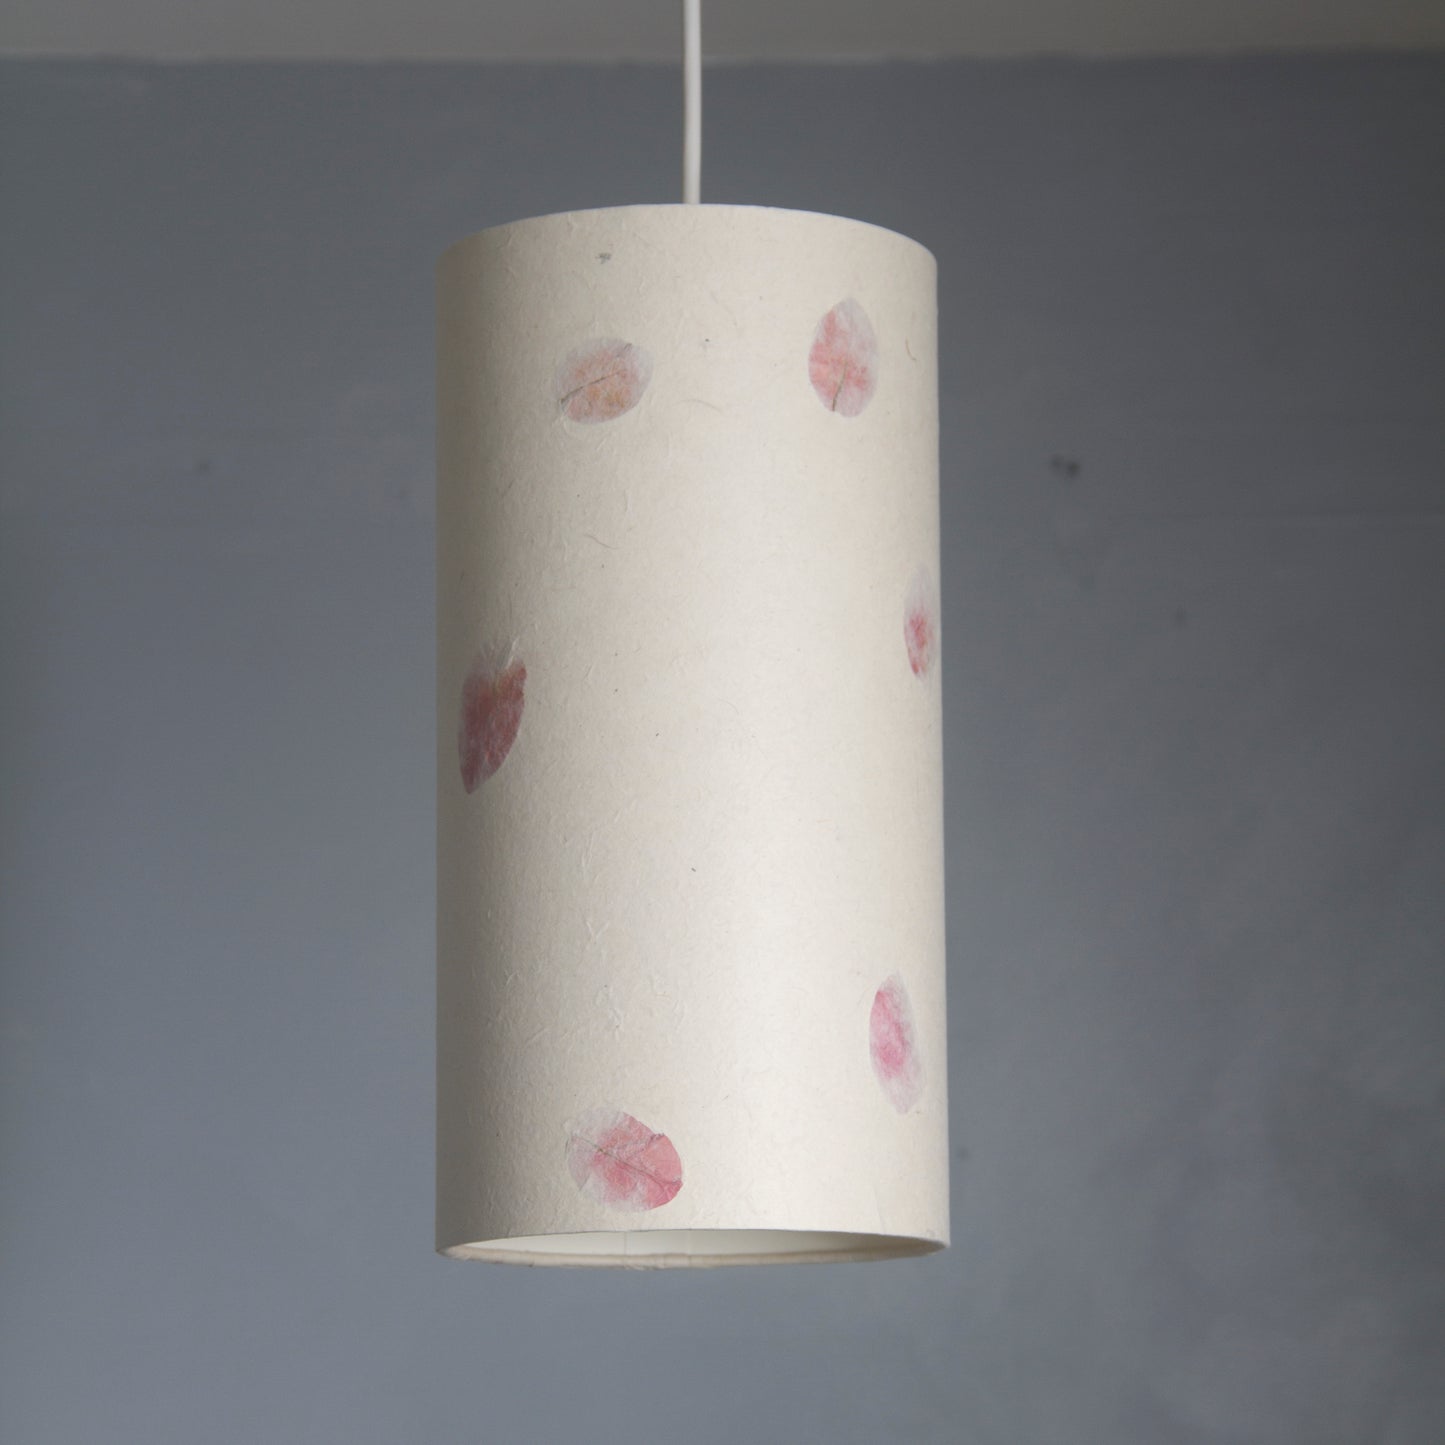 Drum Lamp Shade - P33 ~ Rose Petals on Natural Lokta, 15cm(diameter)